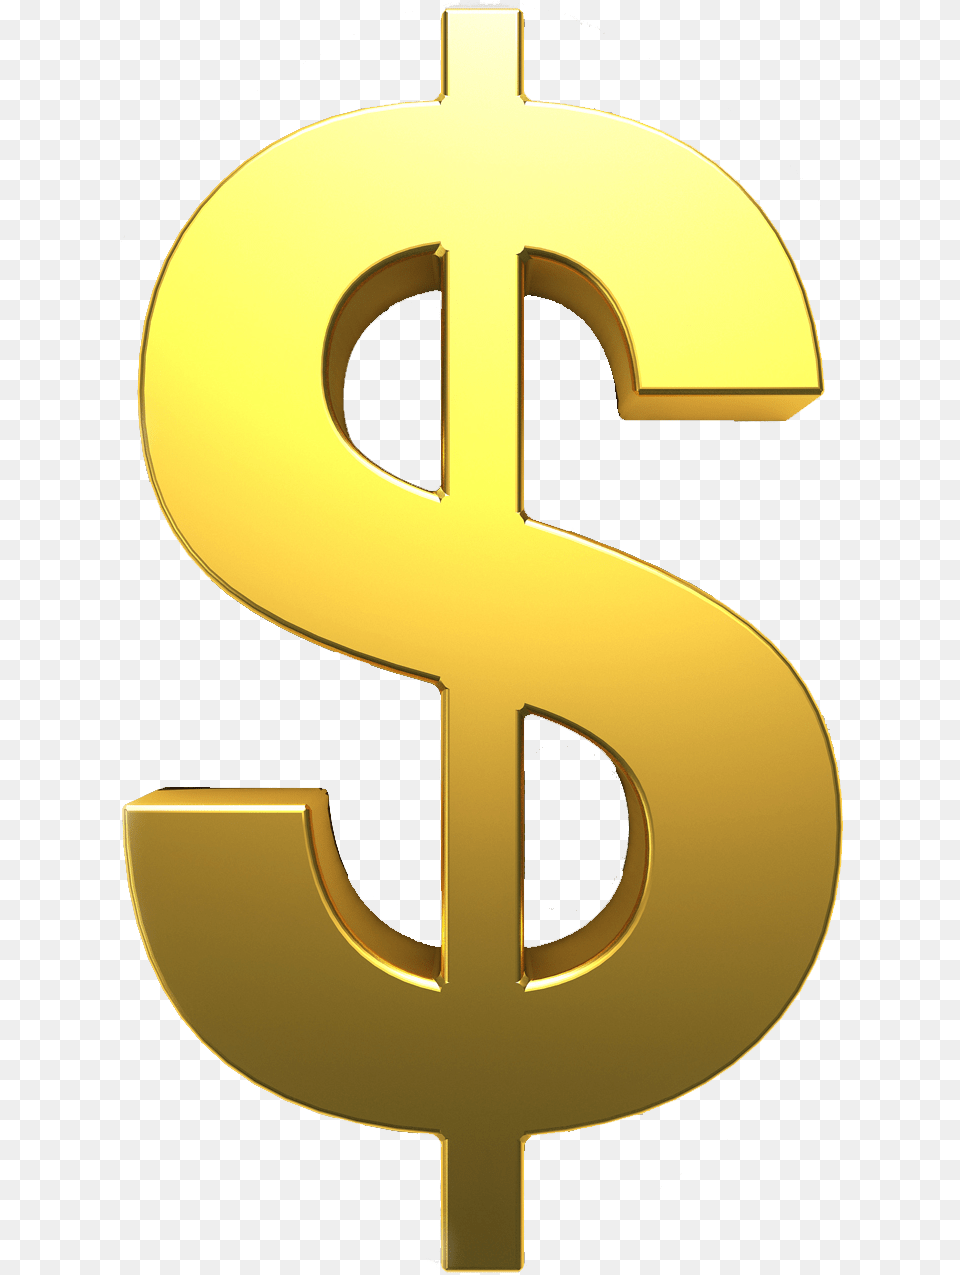 Dollar Znak, Symbol, Number, Text Png